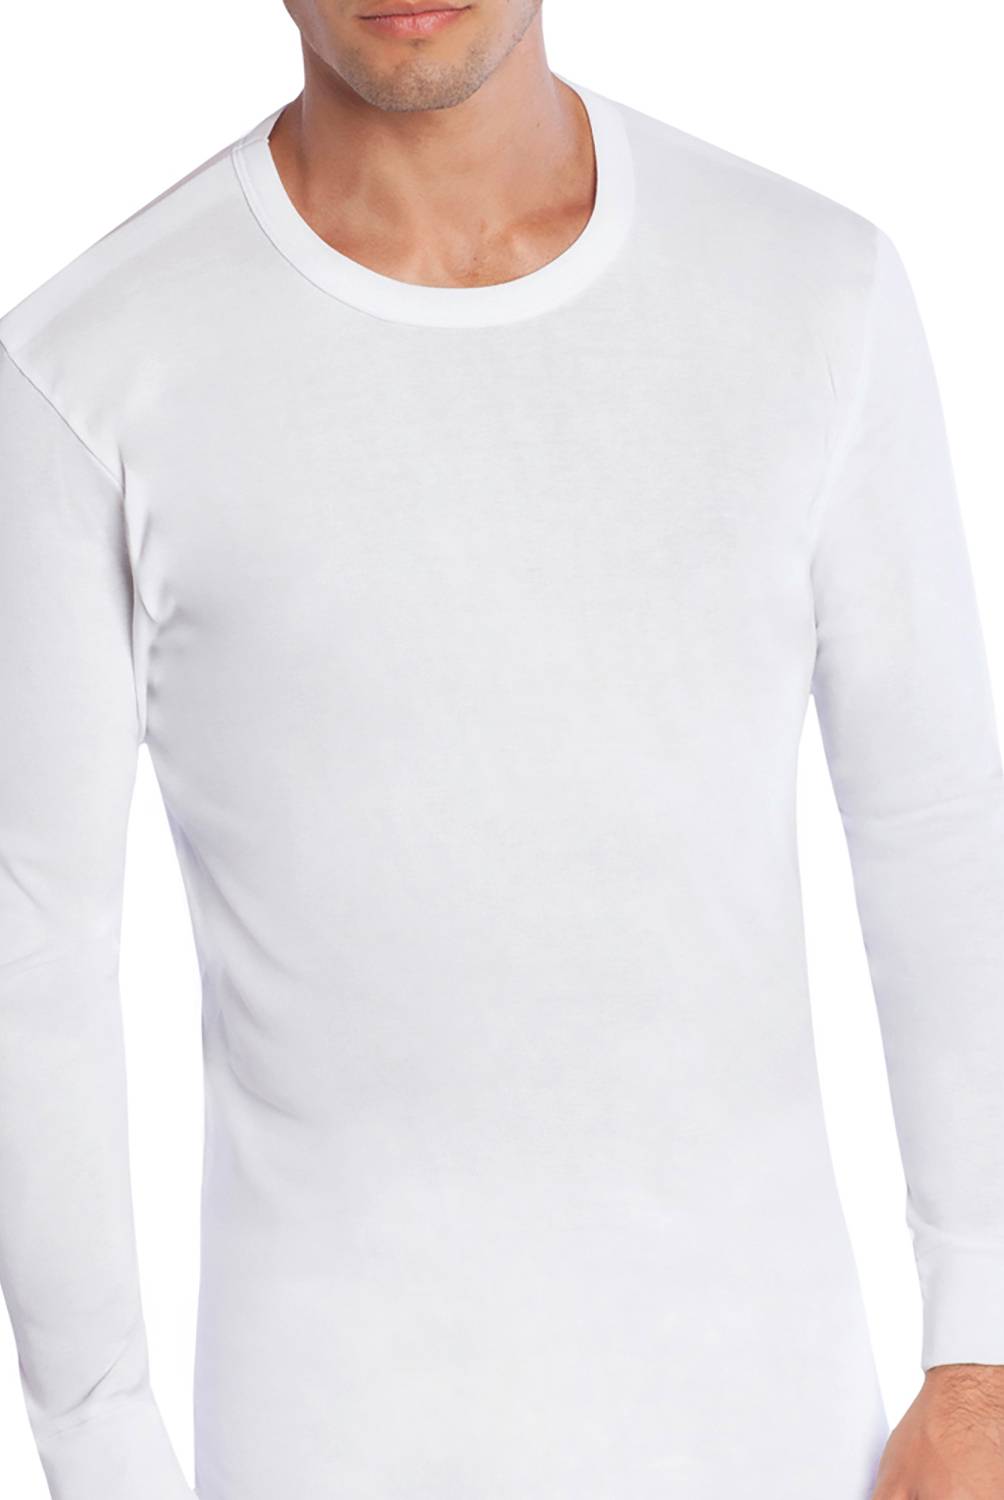 MONARCH - Camiseta Tais Algodón Cuello Polo 650002